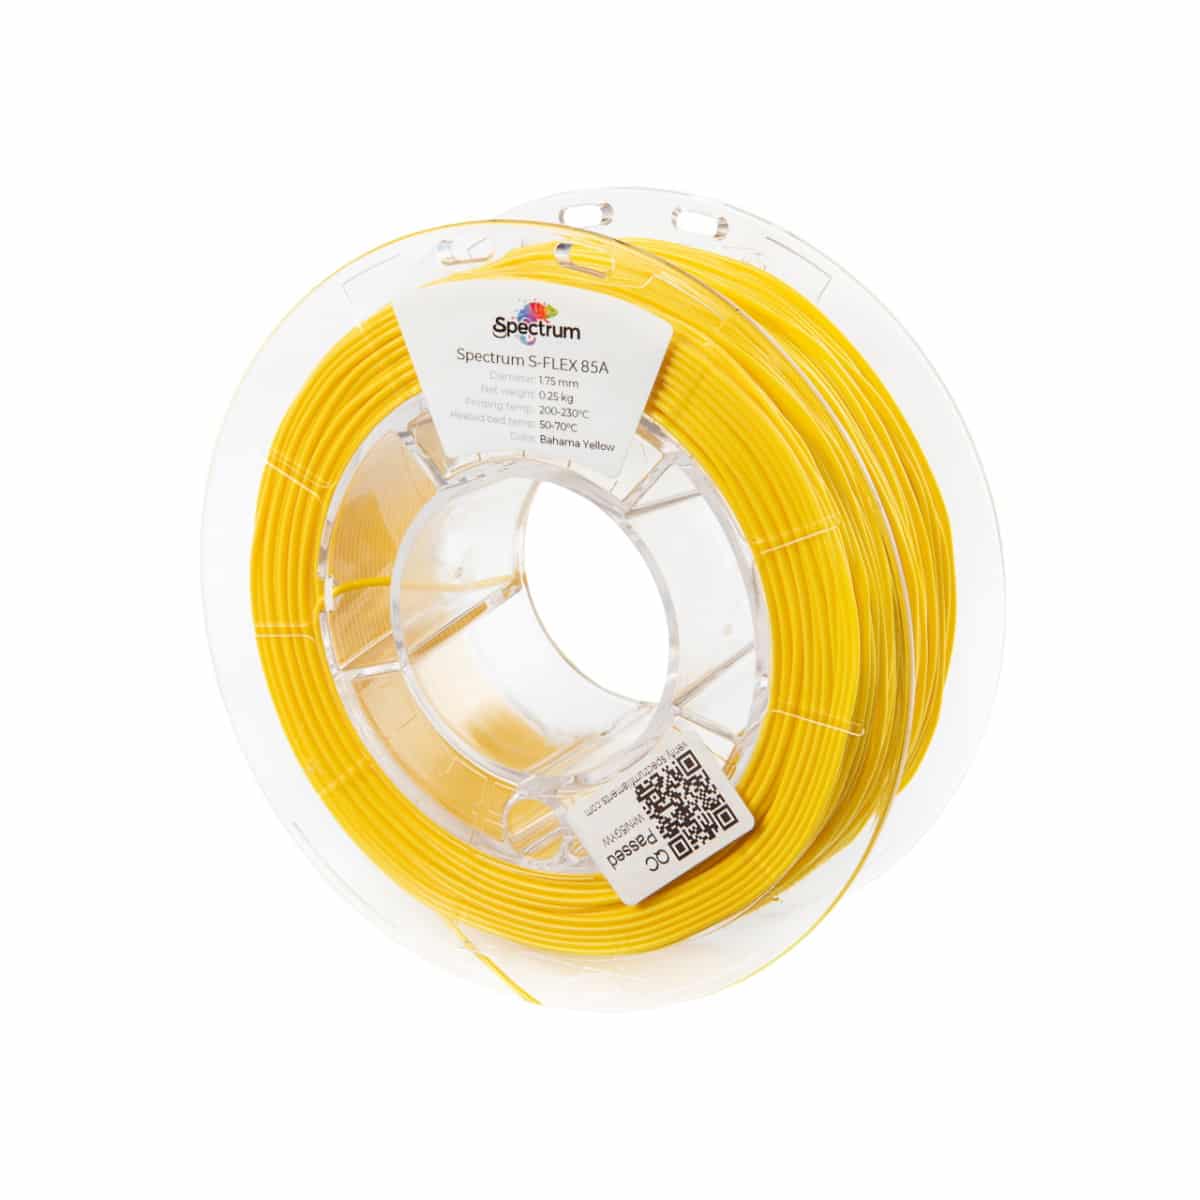 Køb Spectrum Filaments - S-Flex 85A - 1.75mm - Bahama Yellow - 0.25kg - Pris 140.00 kr.